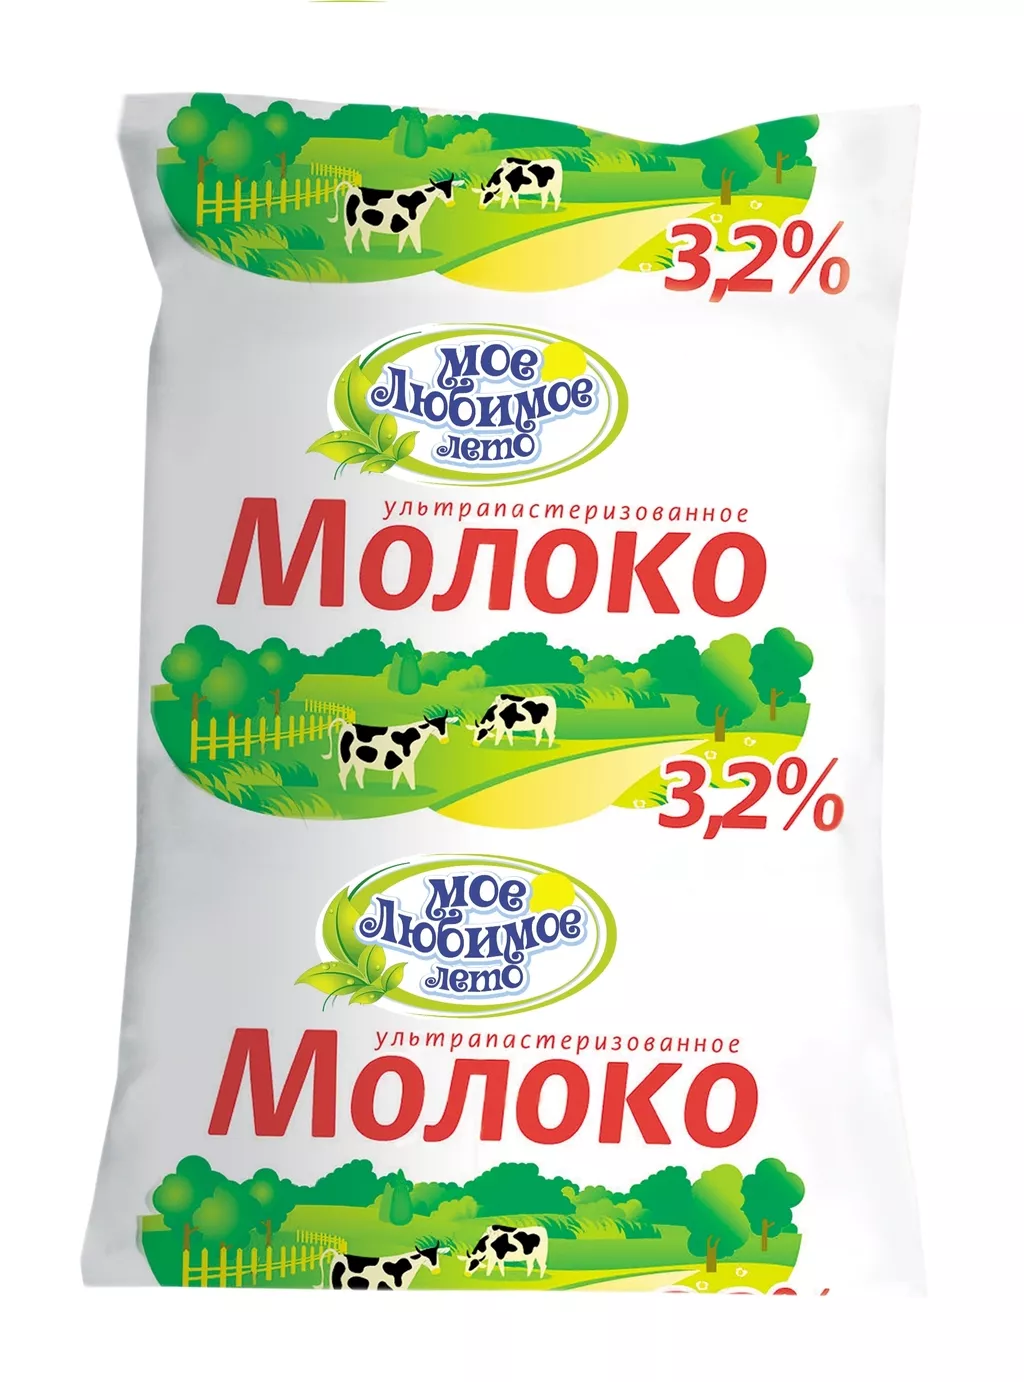 фотография продукта Молоко тфа 2,5% и 3,2% гост,меркурий,чз!